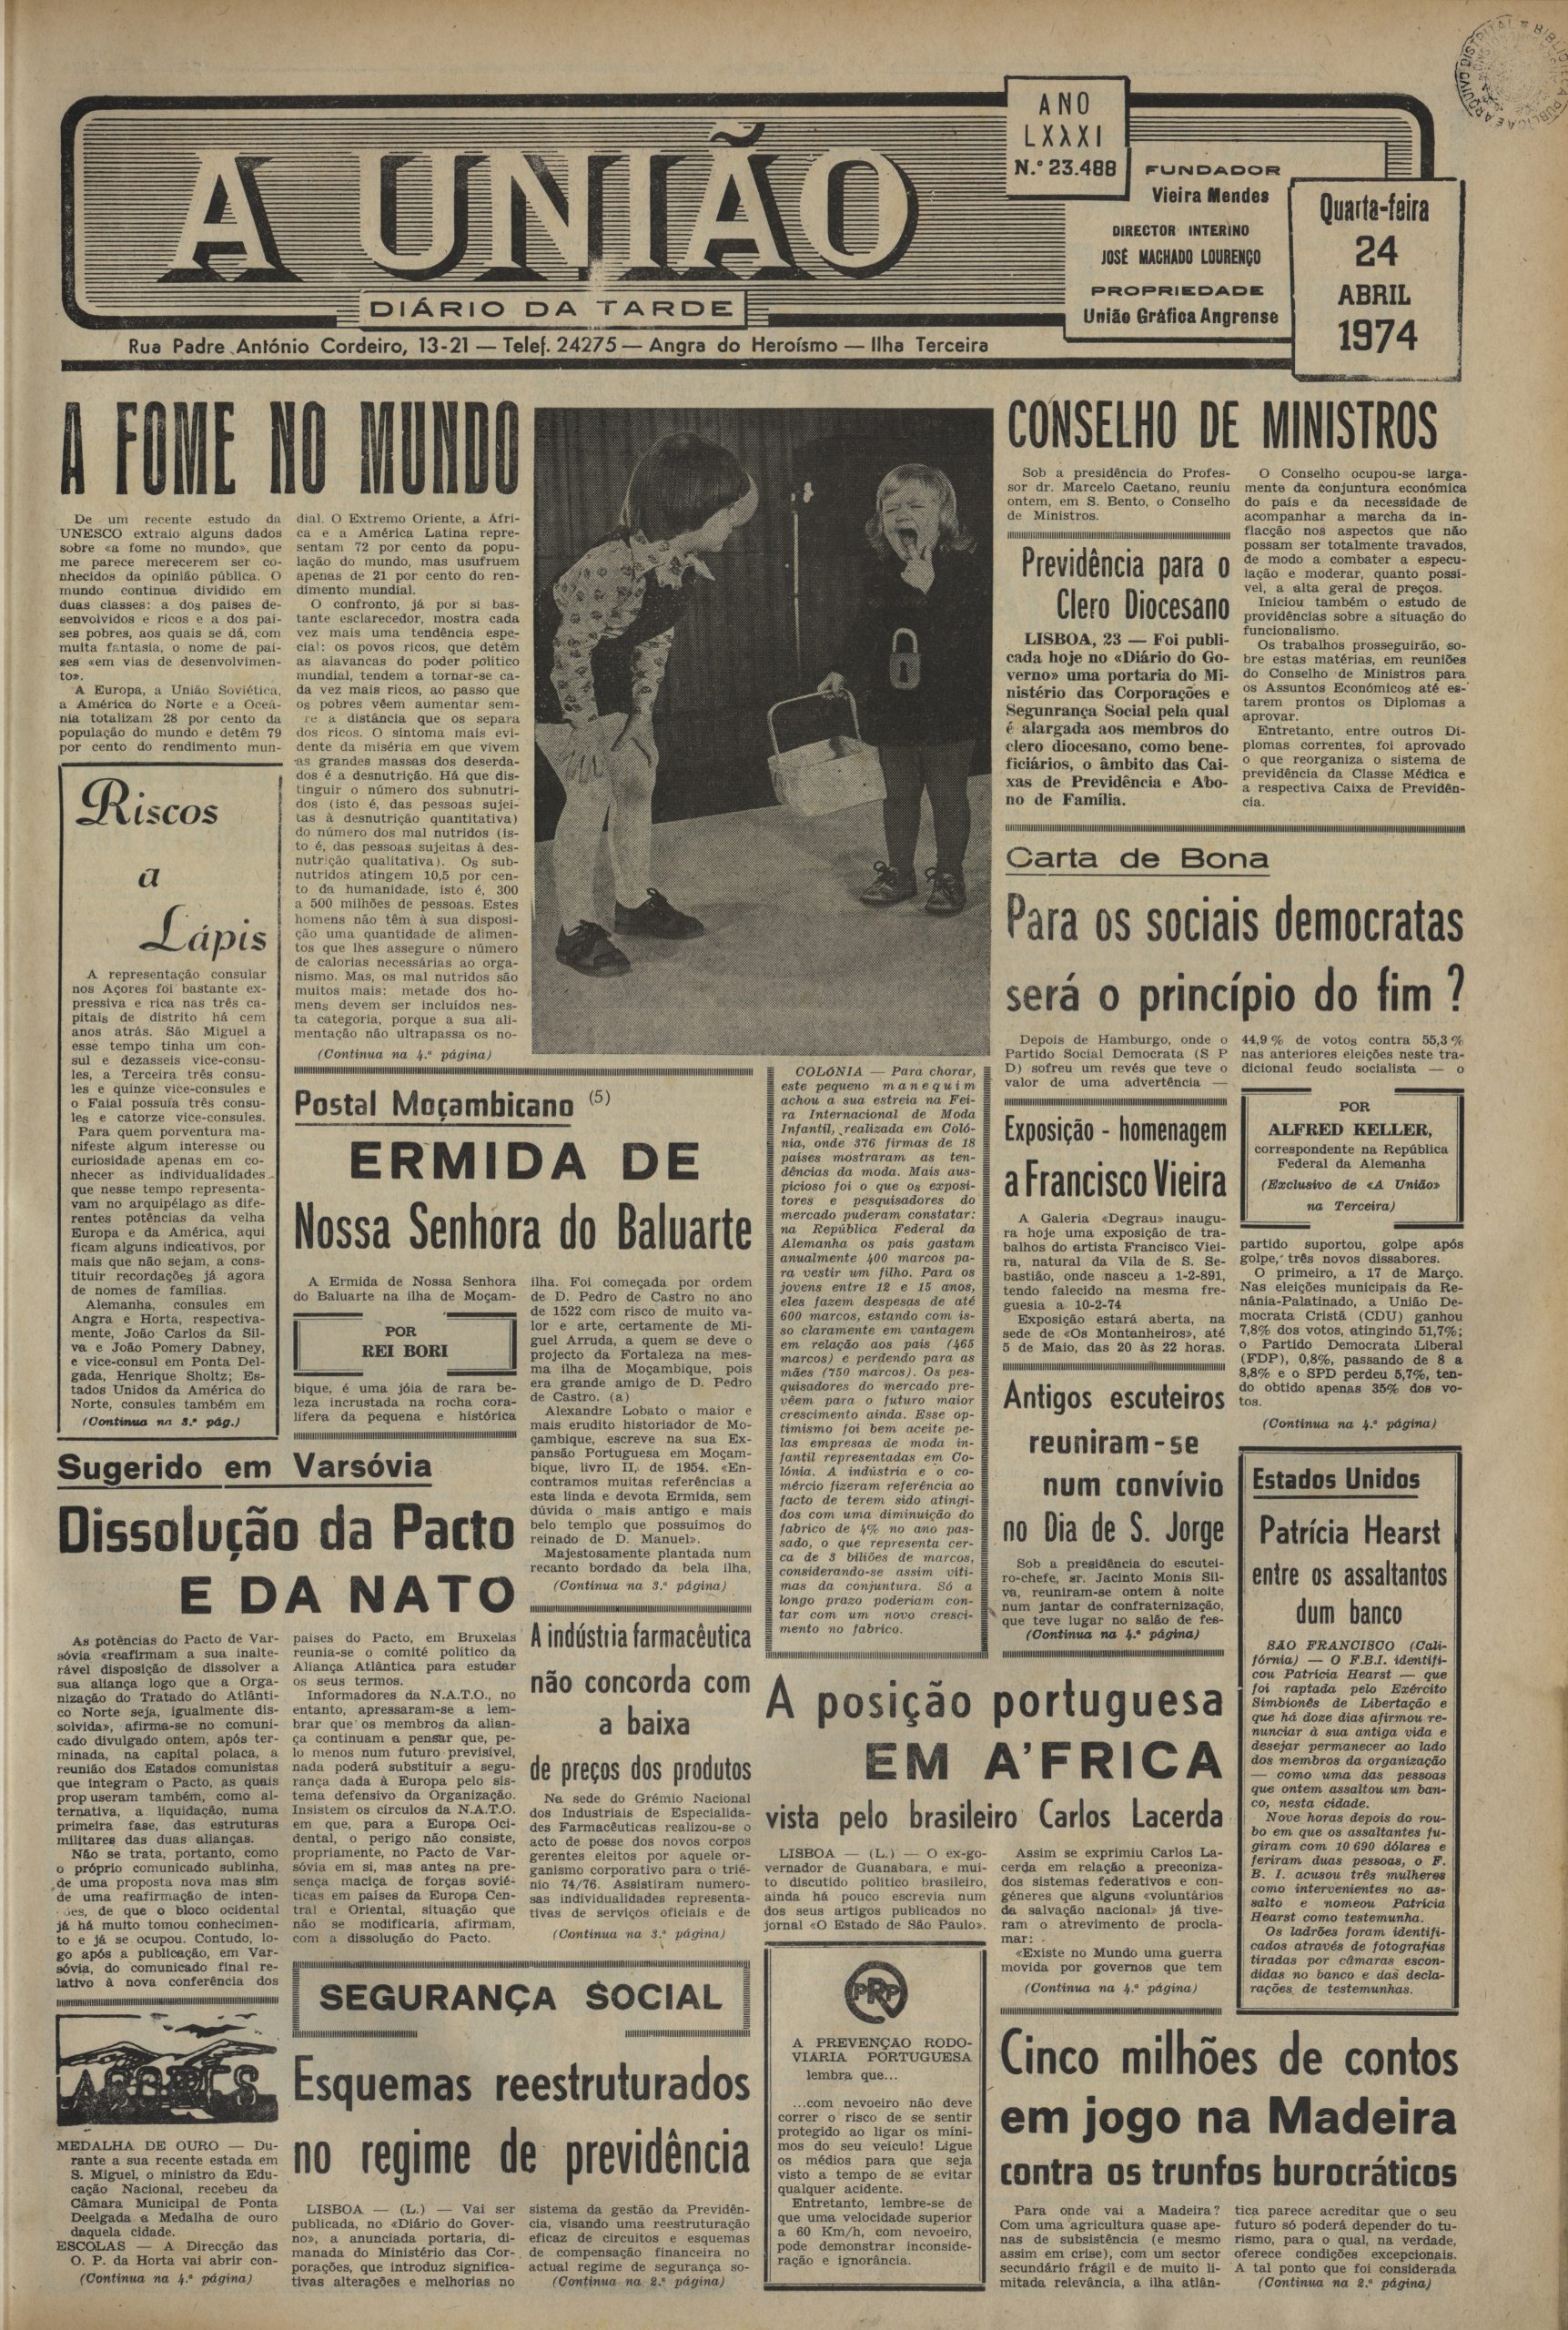 Aunião_24.04.1974